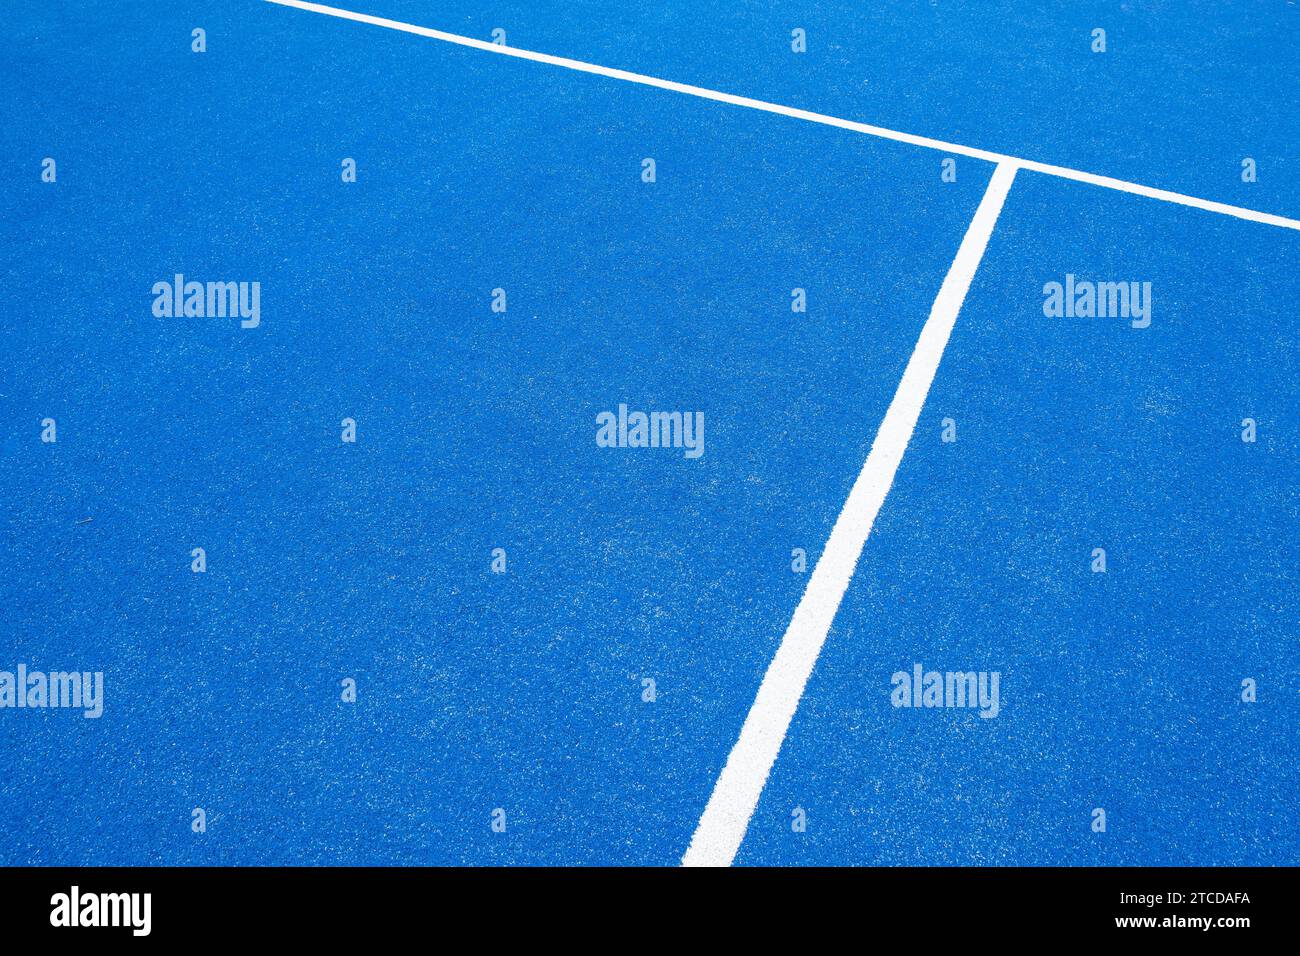 Schlangen von einem Paddle-Tennisplatz, Racket-Sportplatz Stockfoto